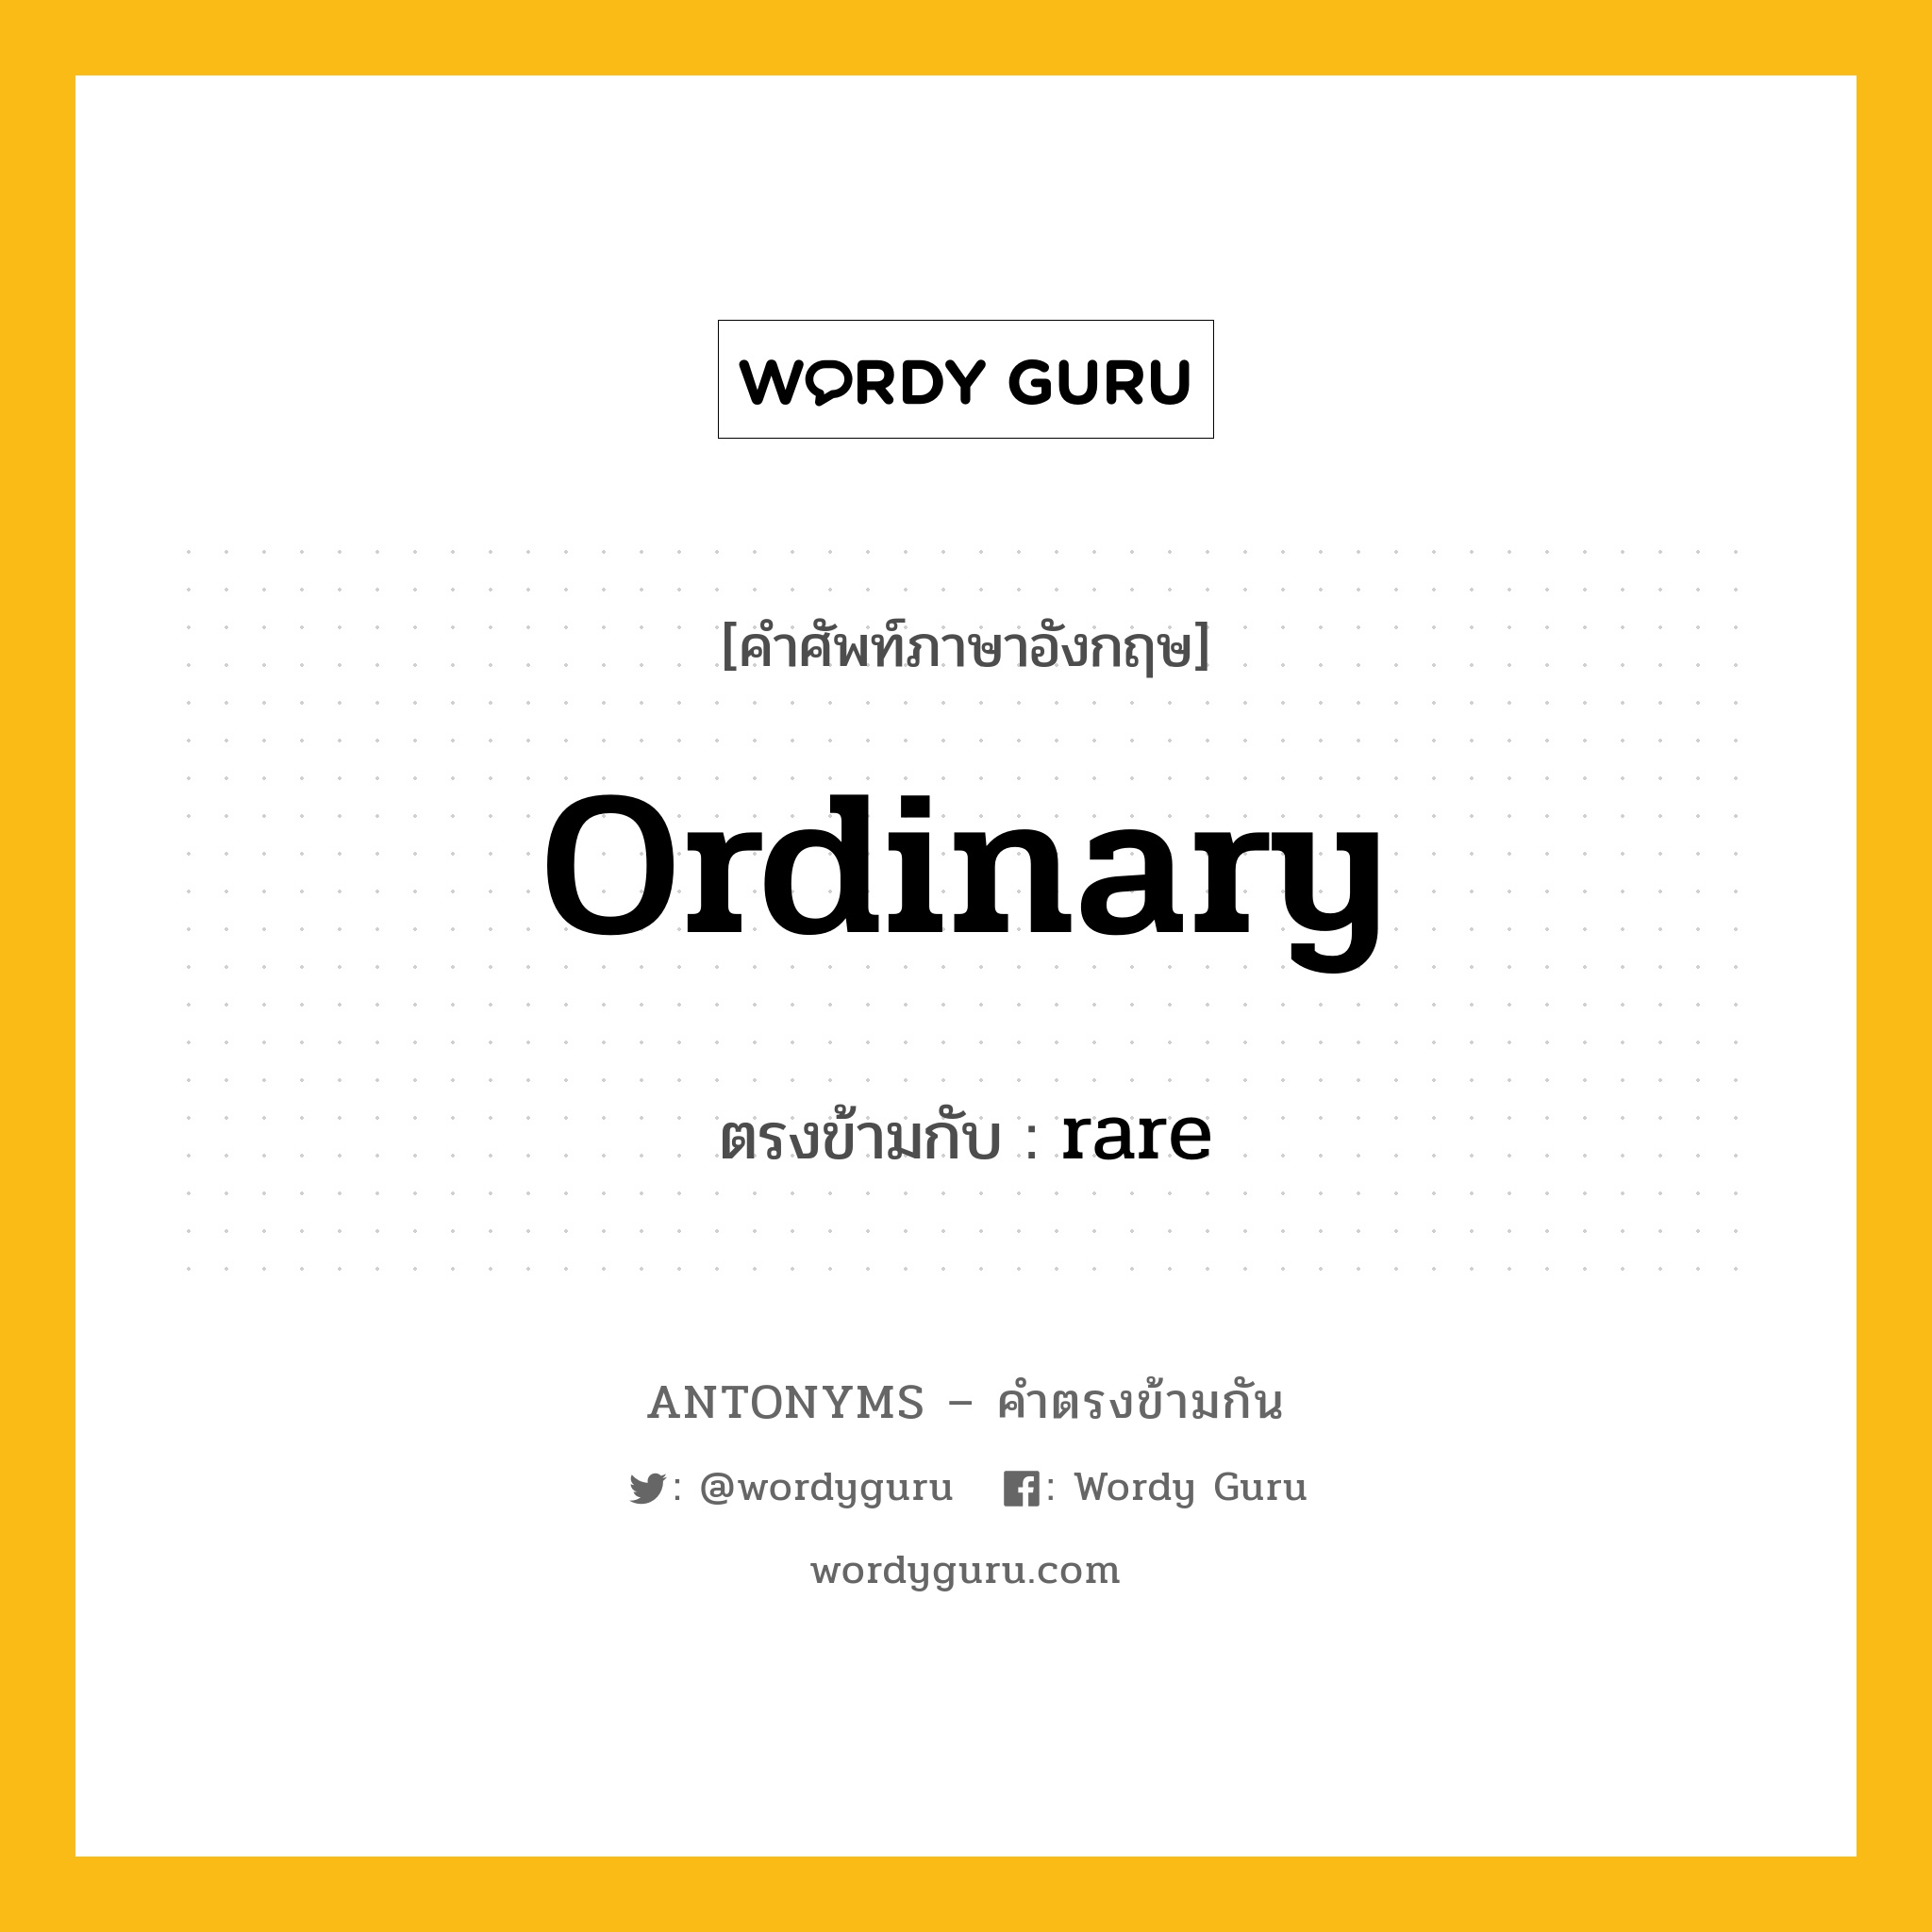 ordinary เป็นคำตรงข้ามกับคำไหนบ้าง?, คำศัพท์ภาษาอังกฤษ ordinary ตรงข้ามกับ rare หมวด rare